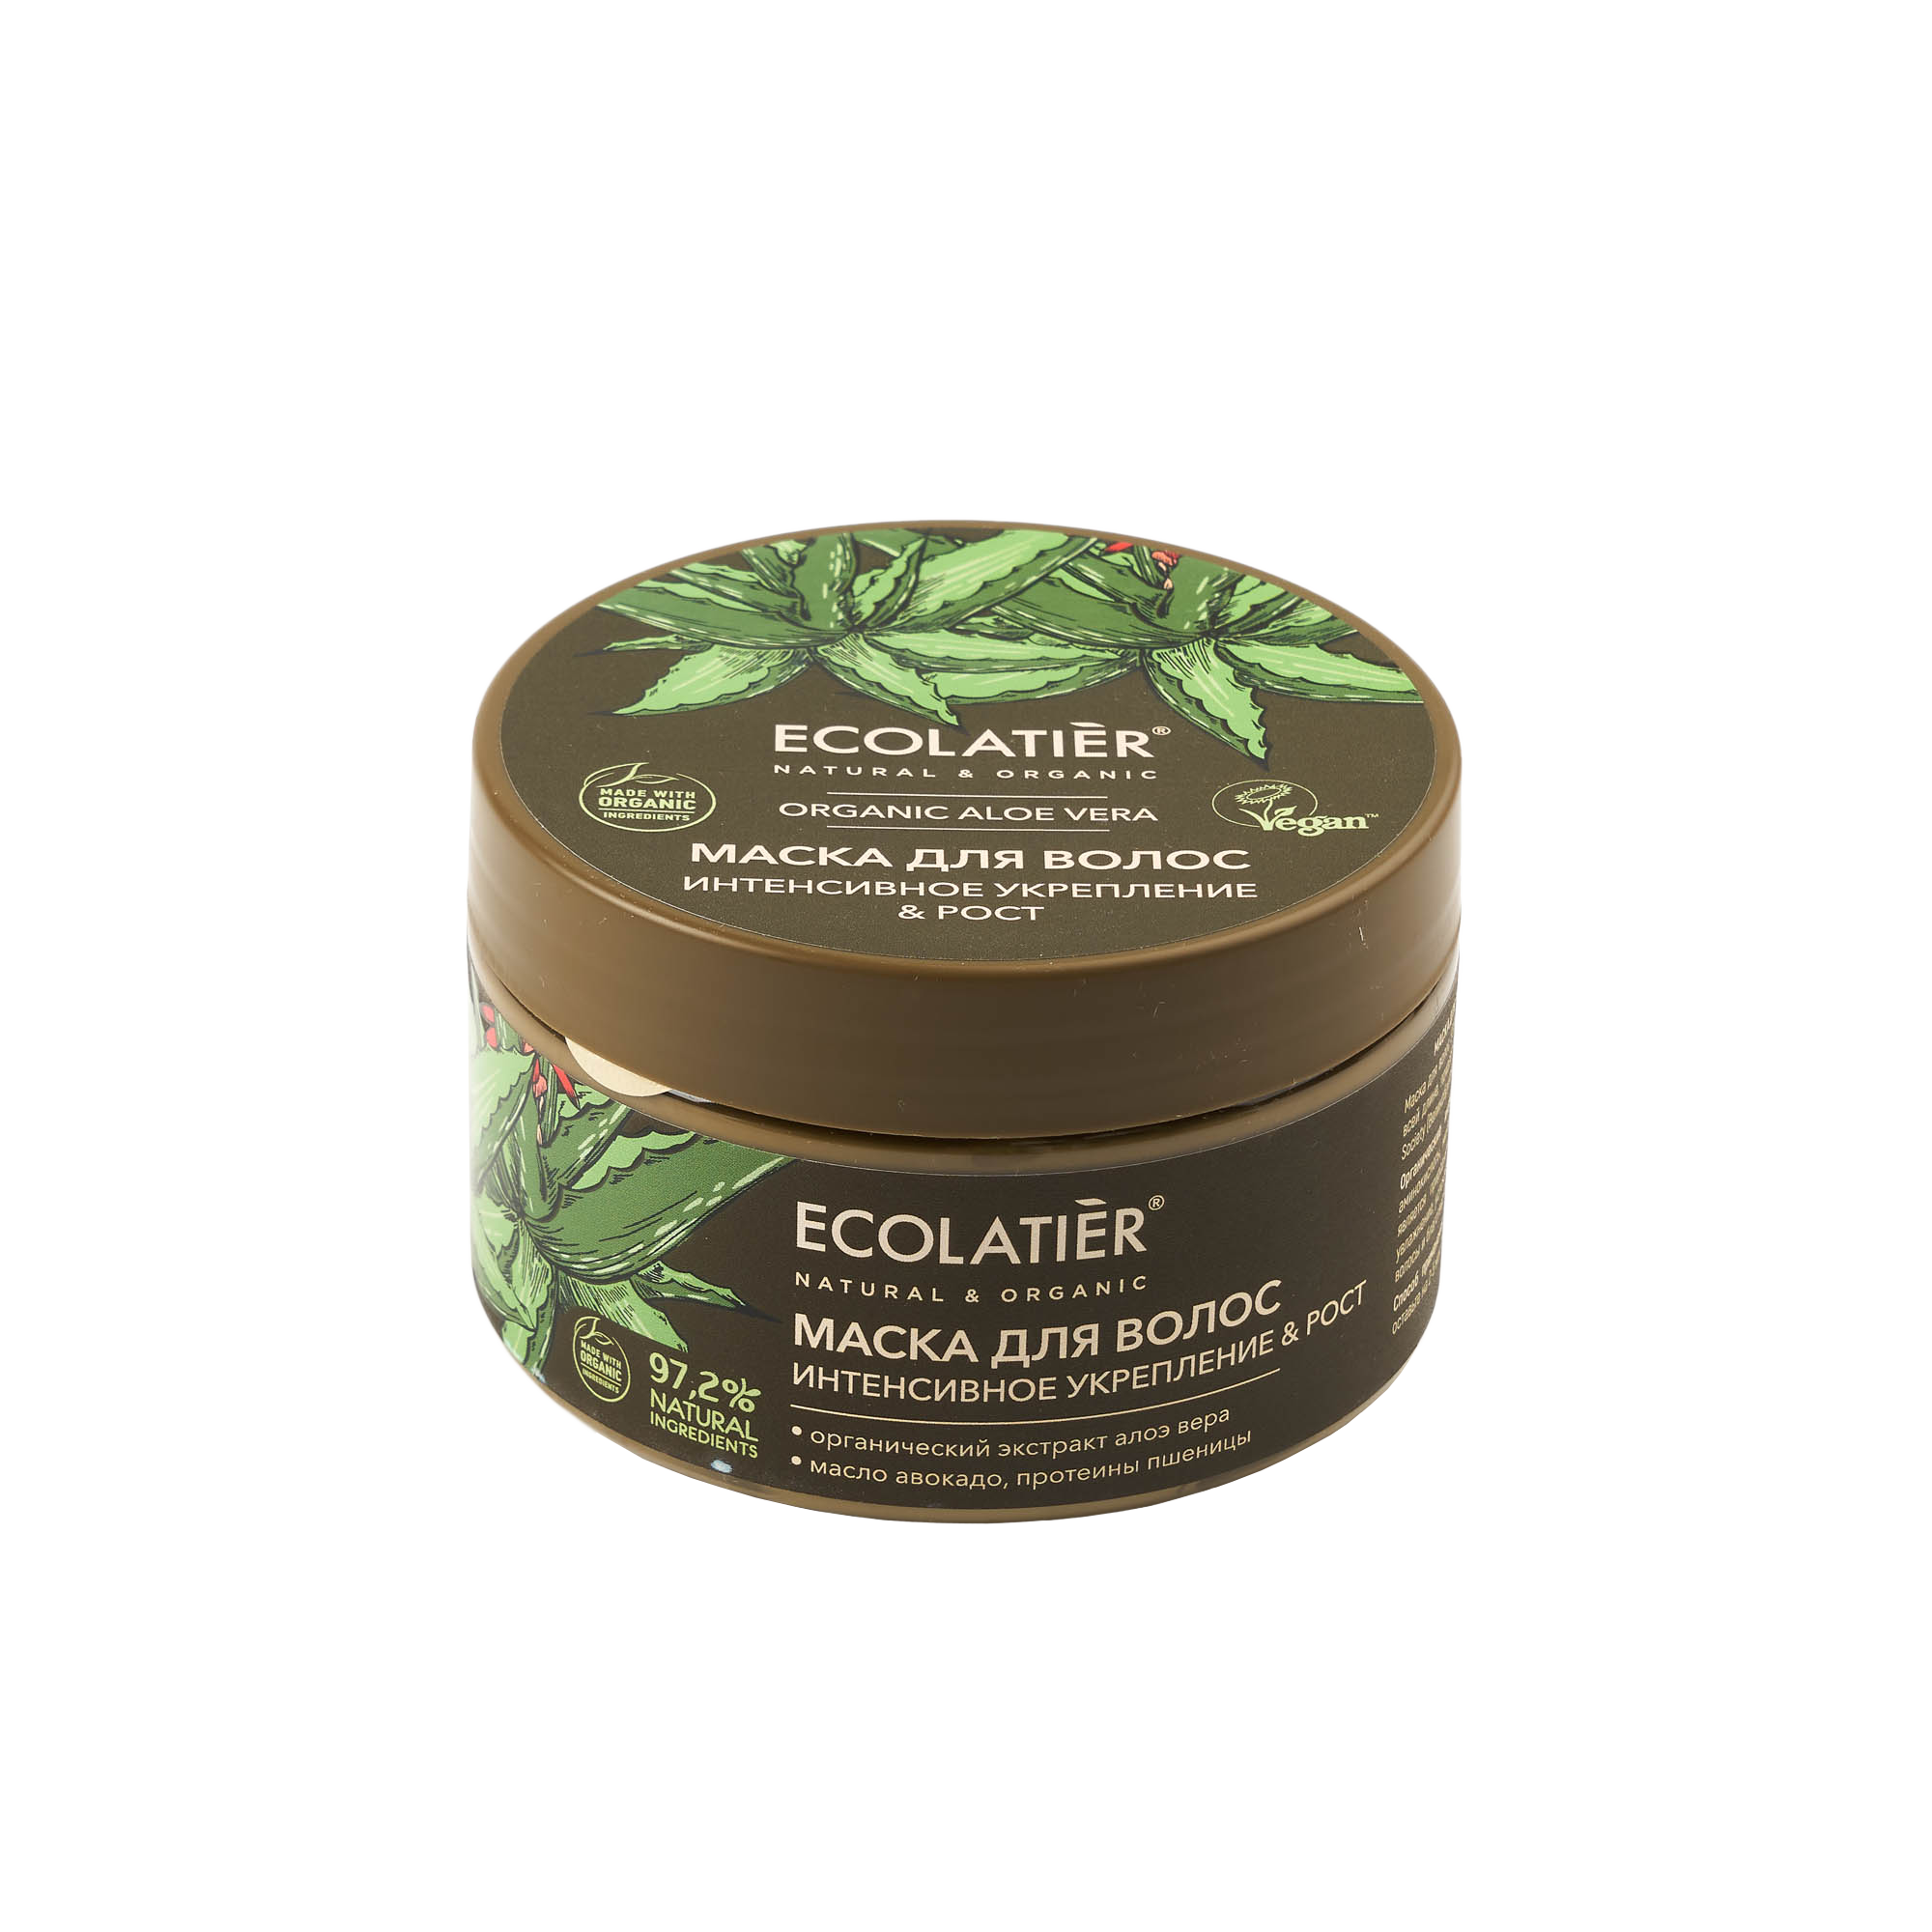 фото Маска для волос ecolatier green интенсивное укрепление & рост organic aloe vera, 250 мл